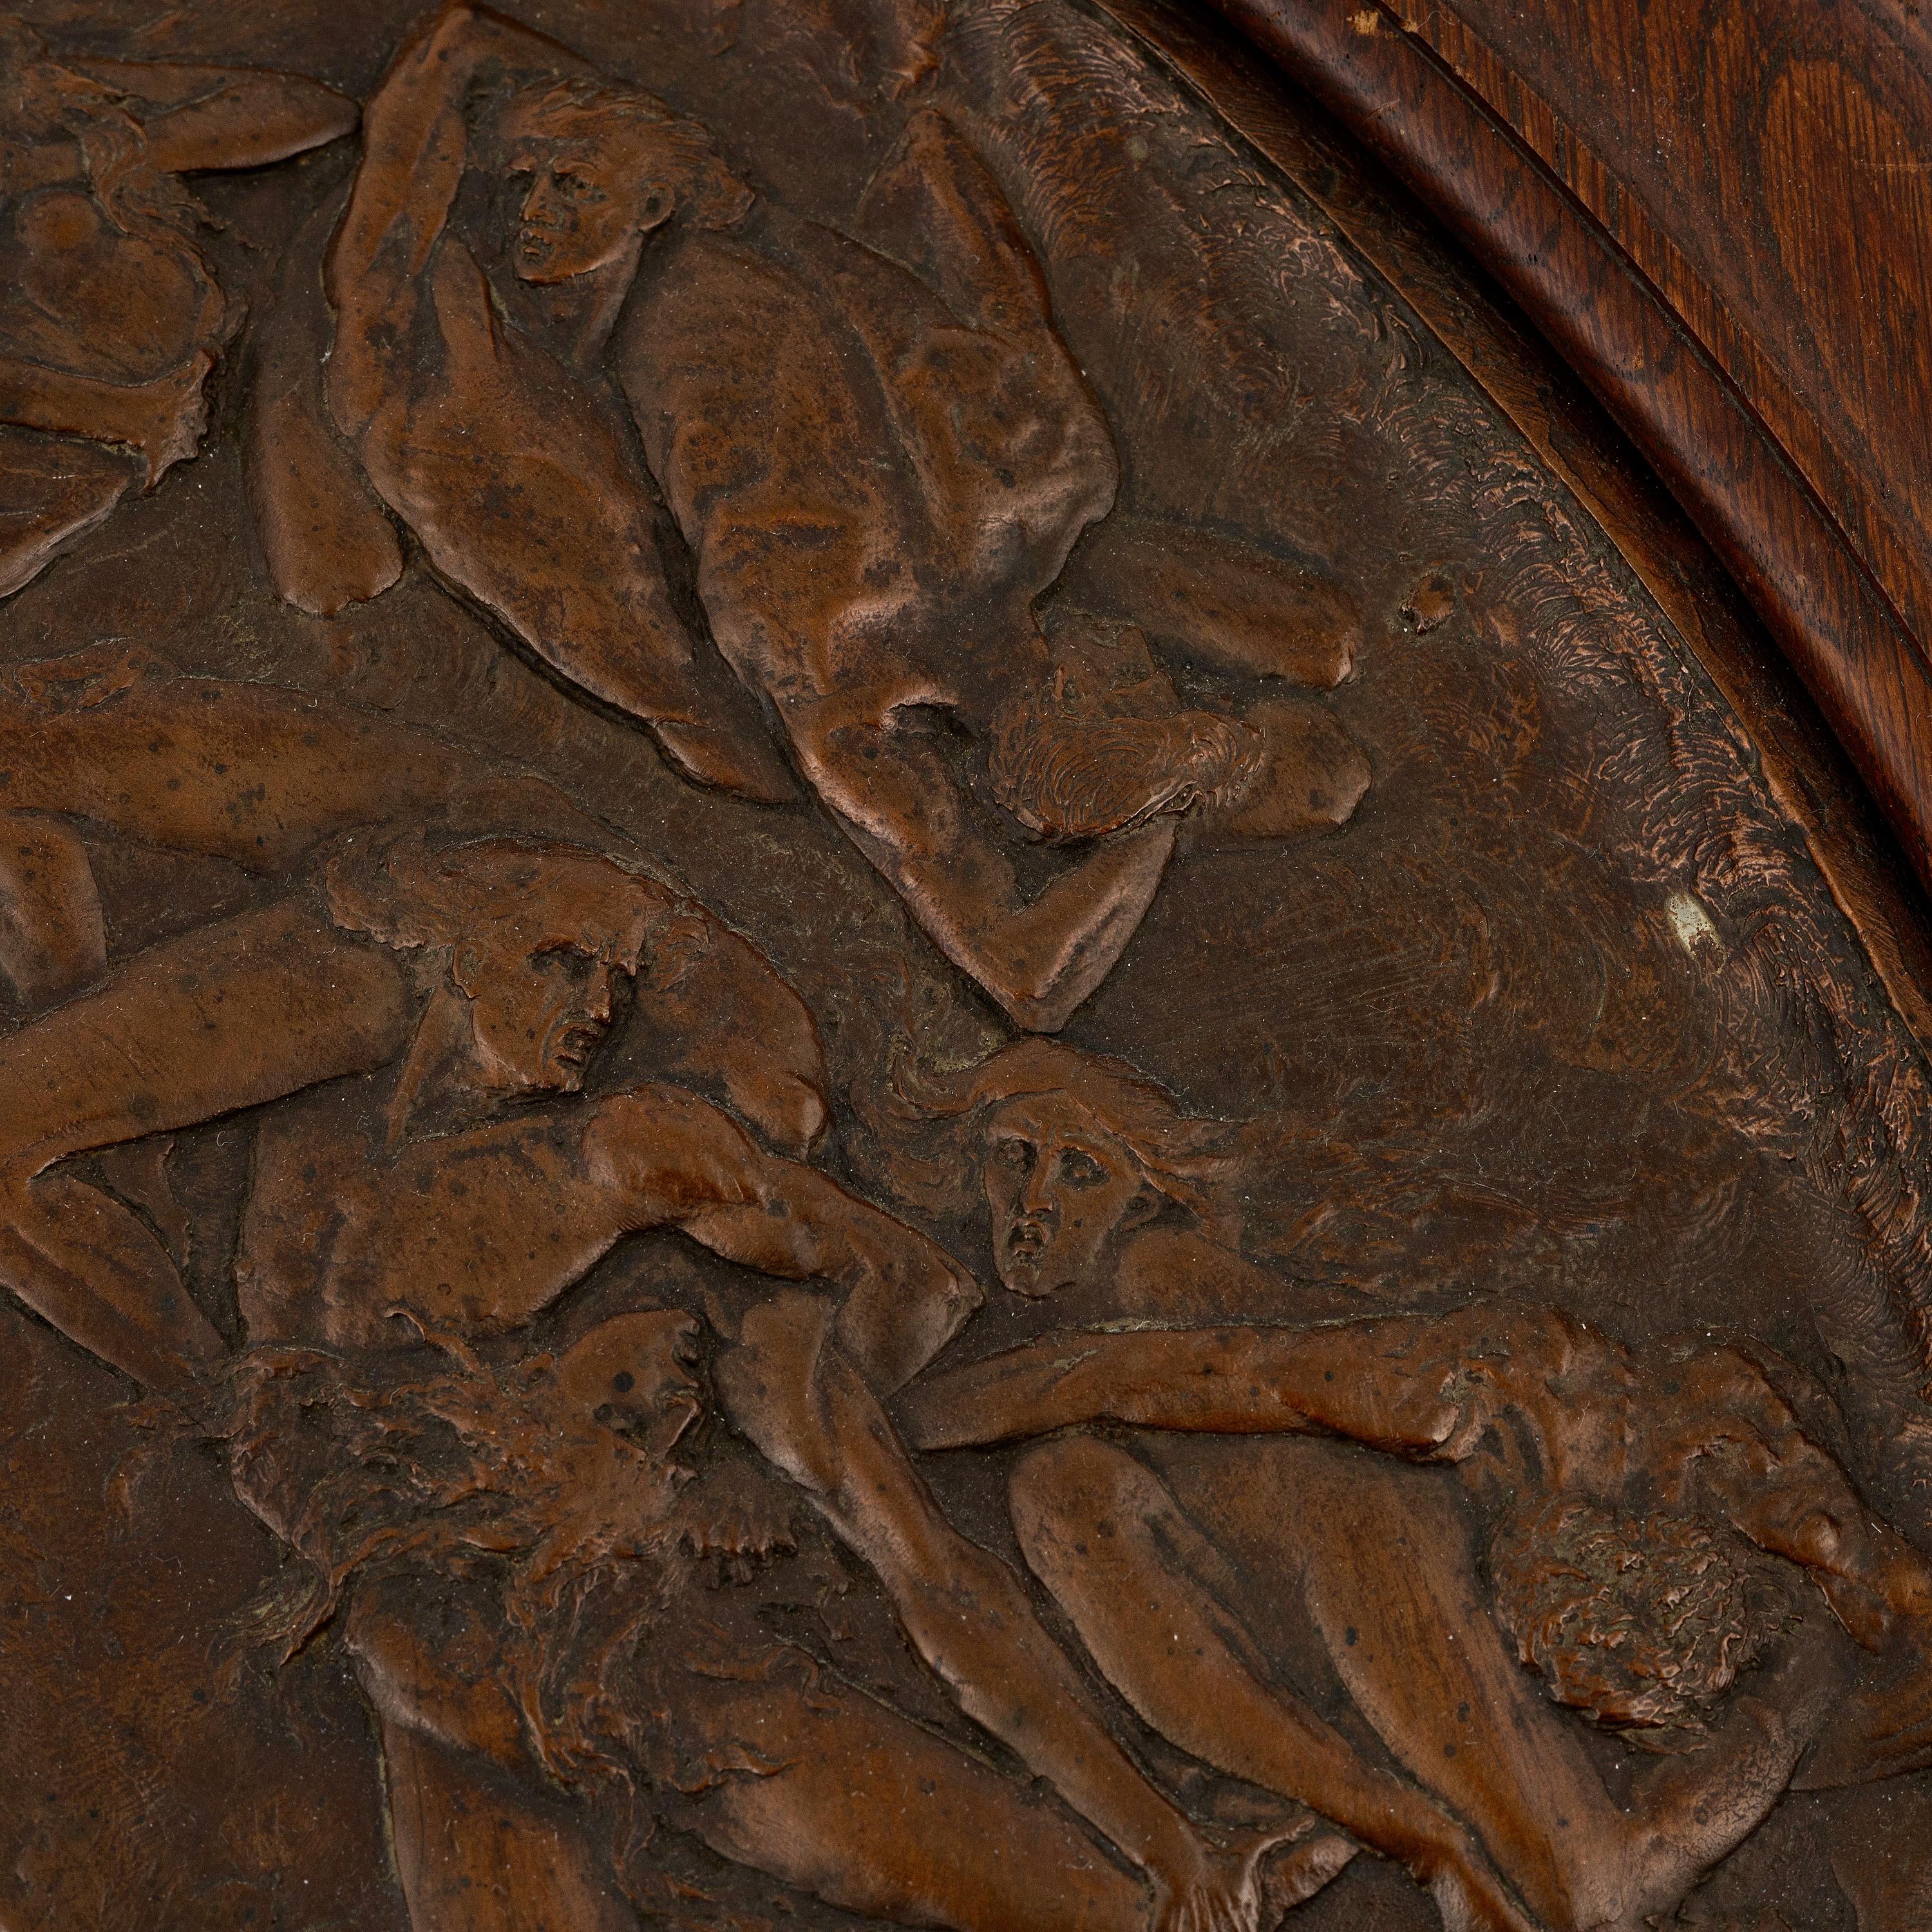  Ein seltener, runder Reliefguss aus Bronze/Kupfer mit brauner Patina von Jean François Marie Garnier (1820-1895), der aufwändig ziseliert wurde. Gegossen ca. 1859-1864. Nicht unterzeichnet. Das Motiv ist dem ersten Teil von Dantes Göttlicher